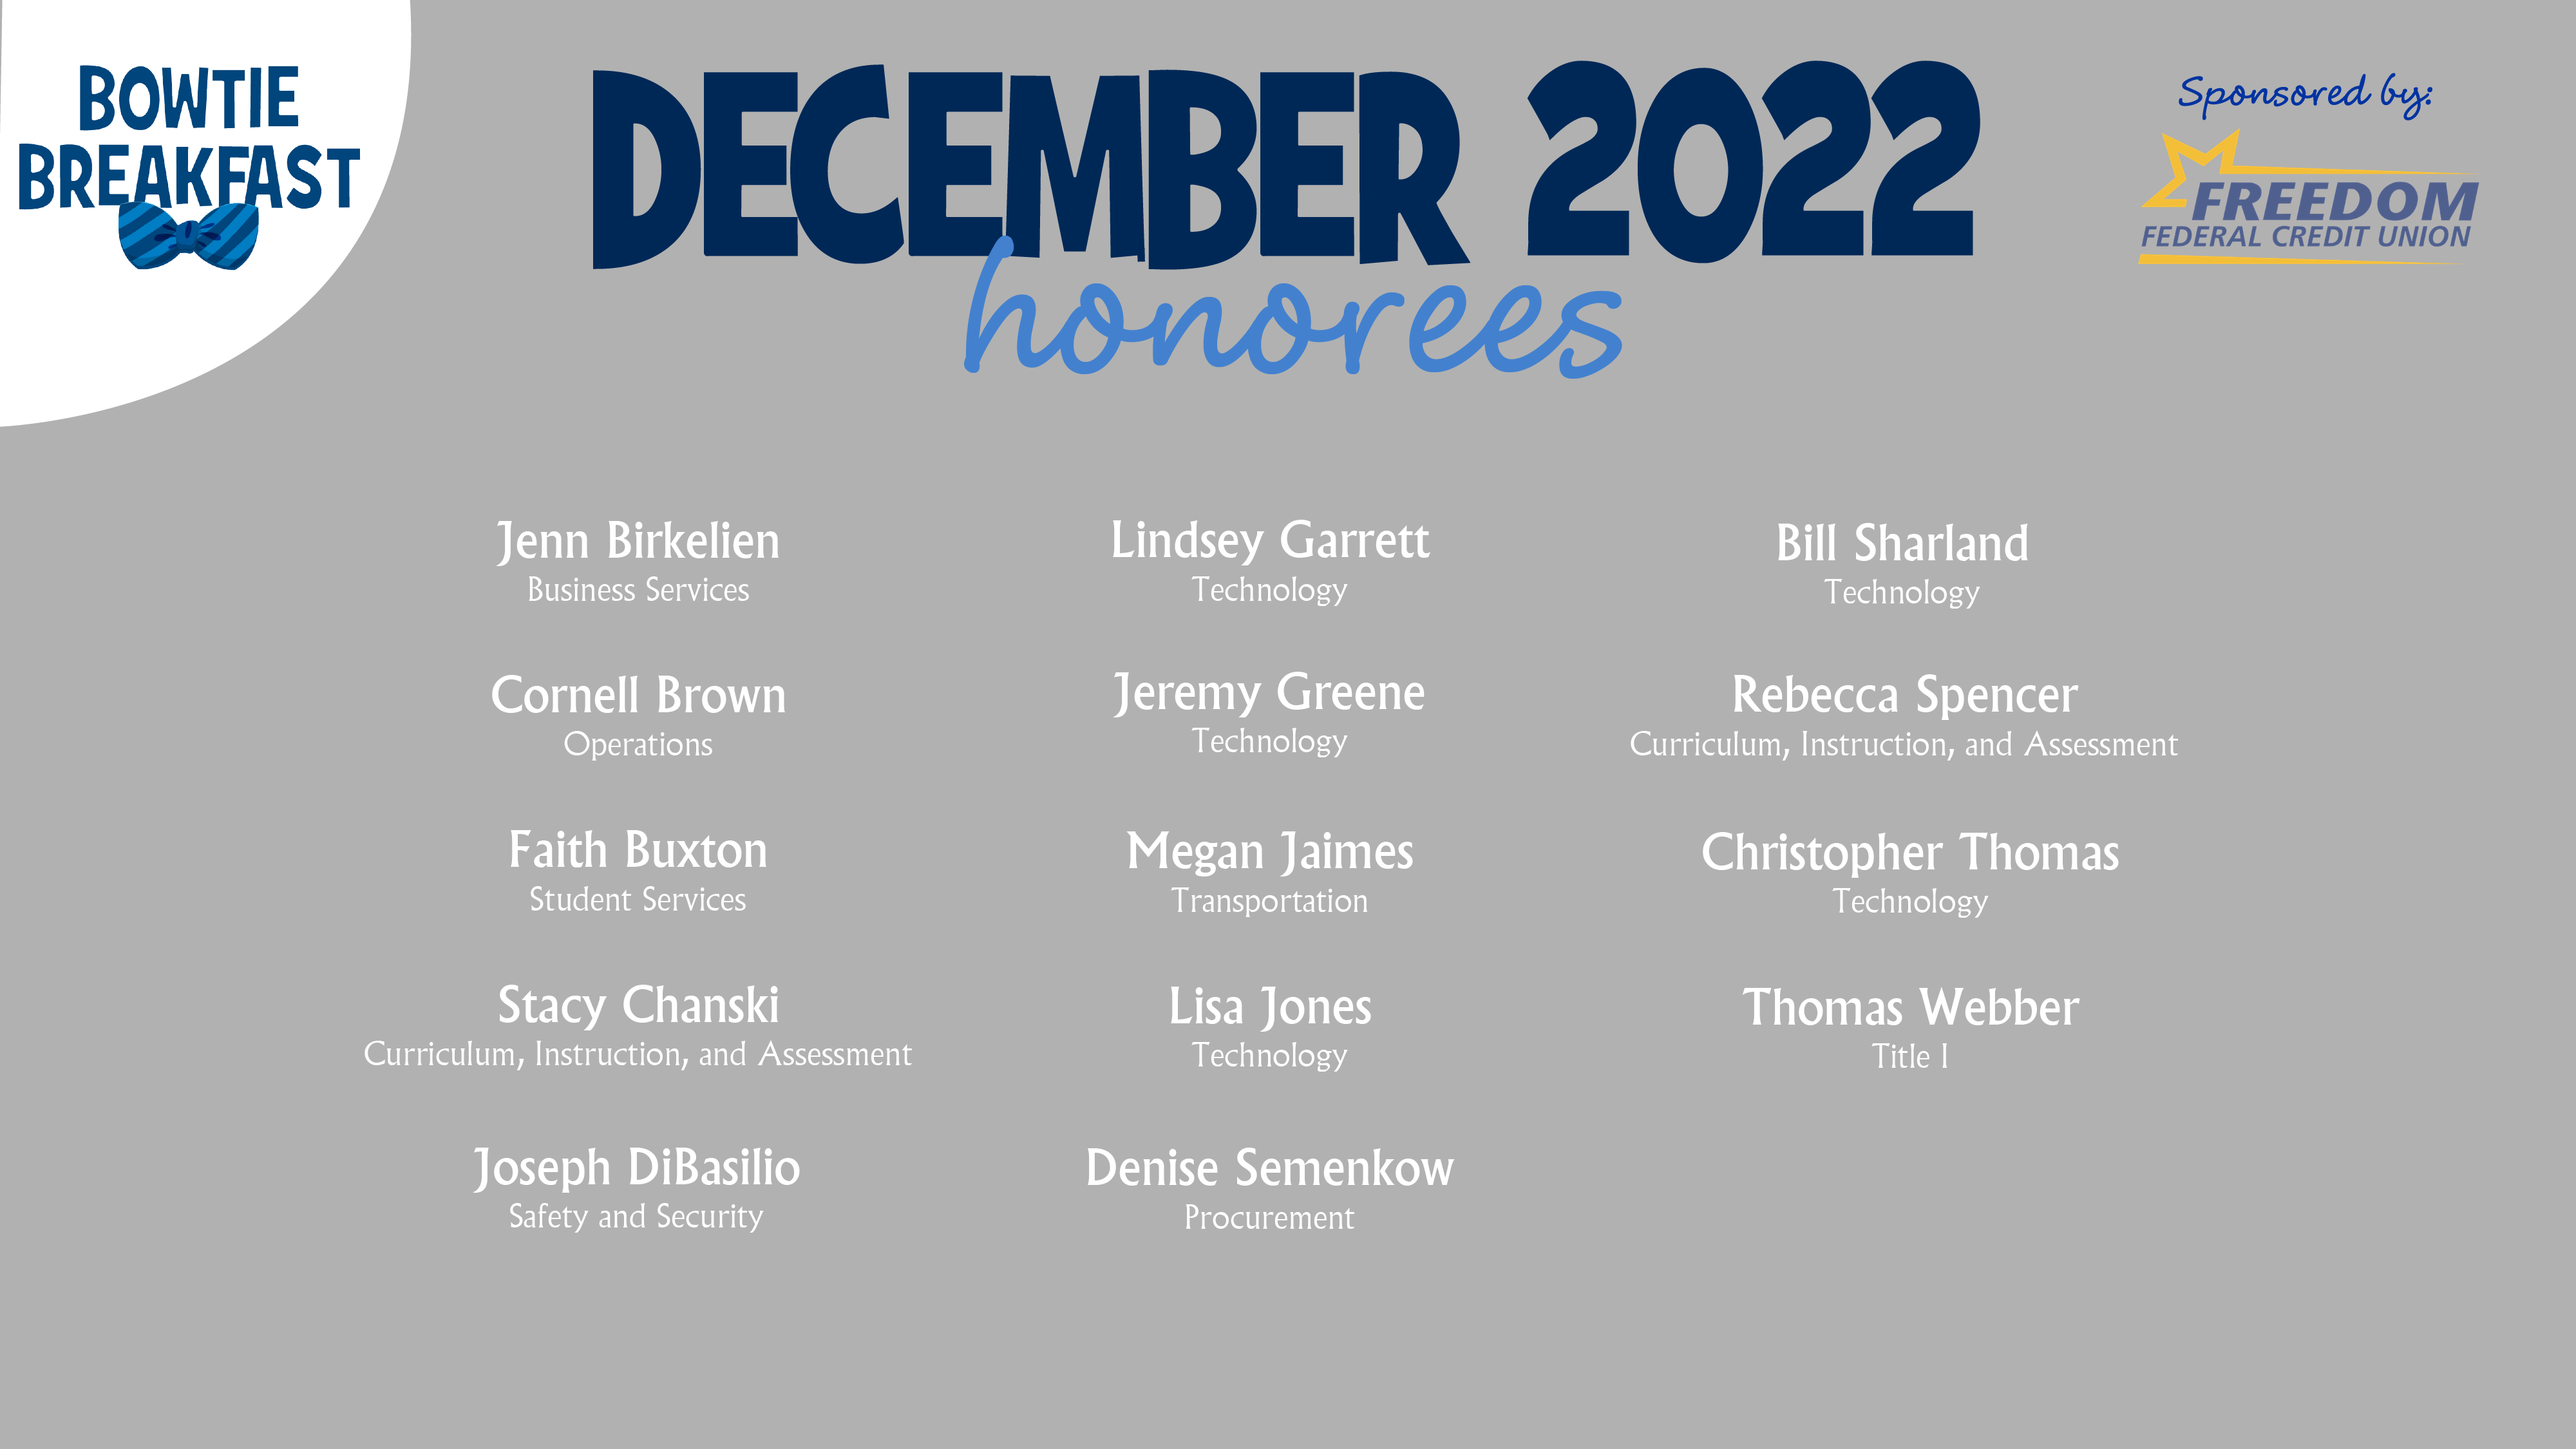 HCPS Bowtie Breakfast Honorees - December 2022